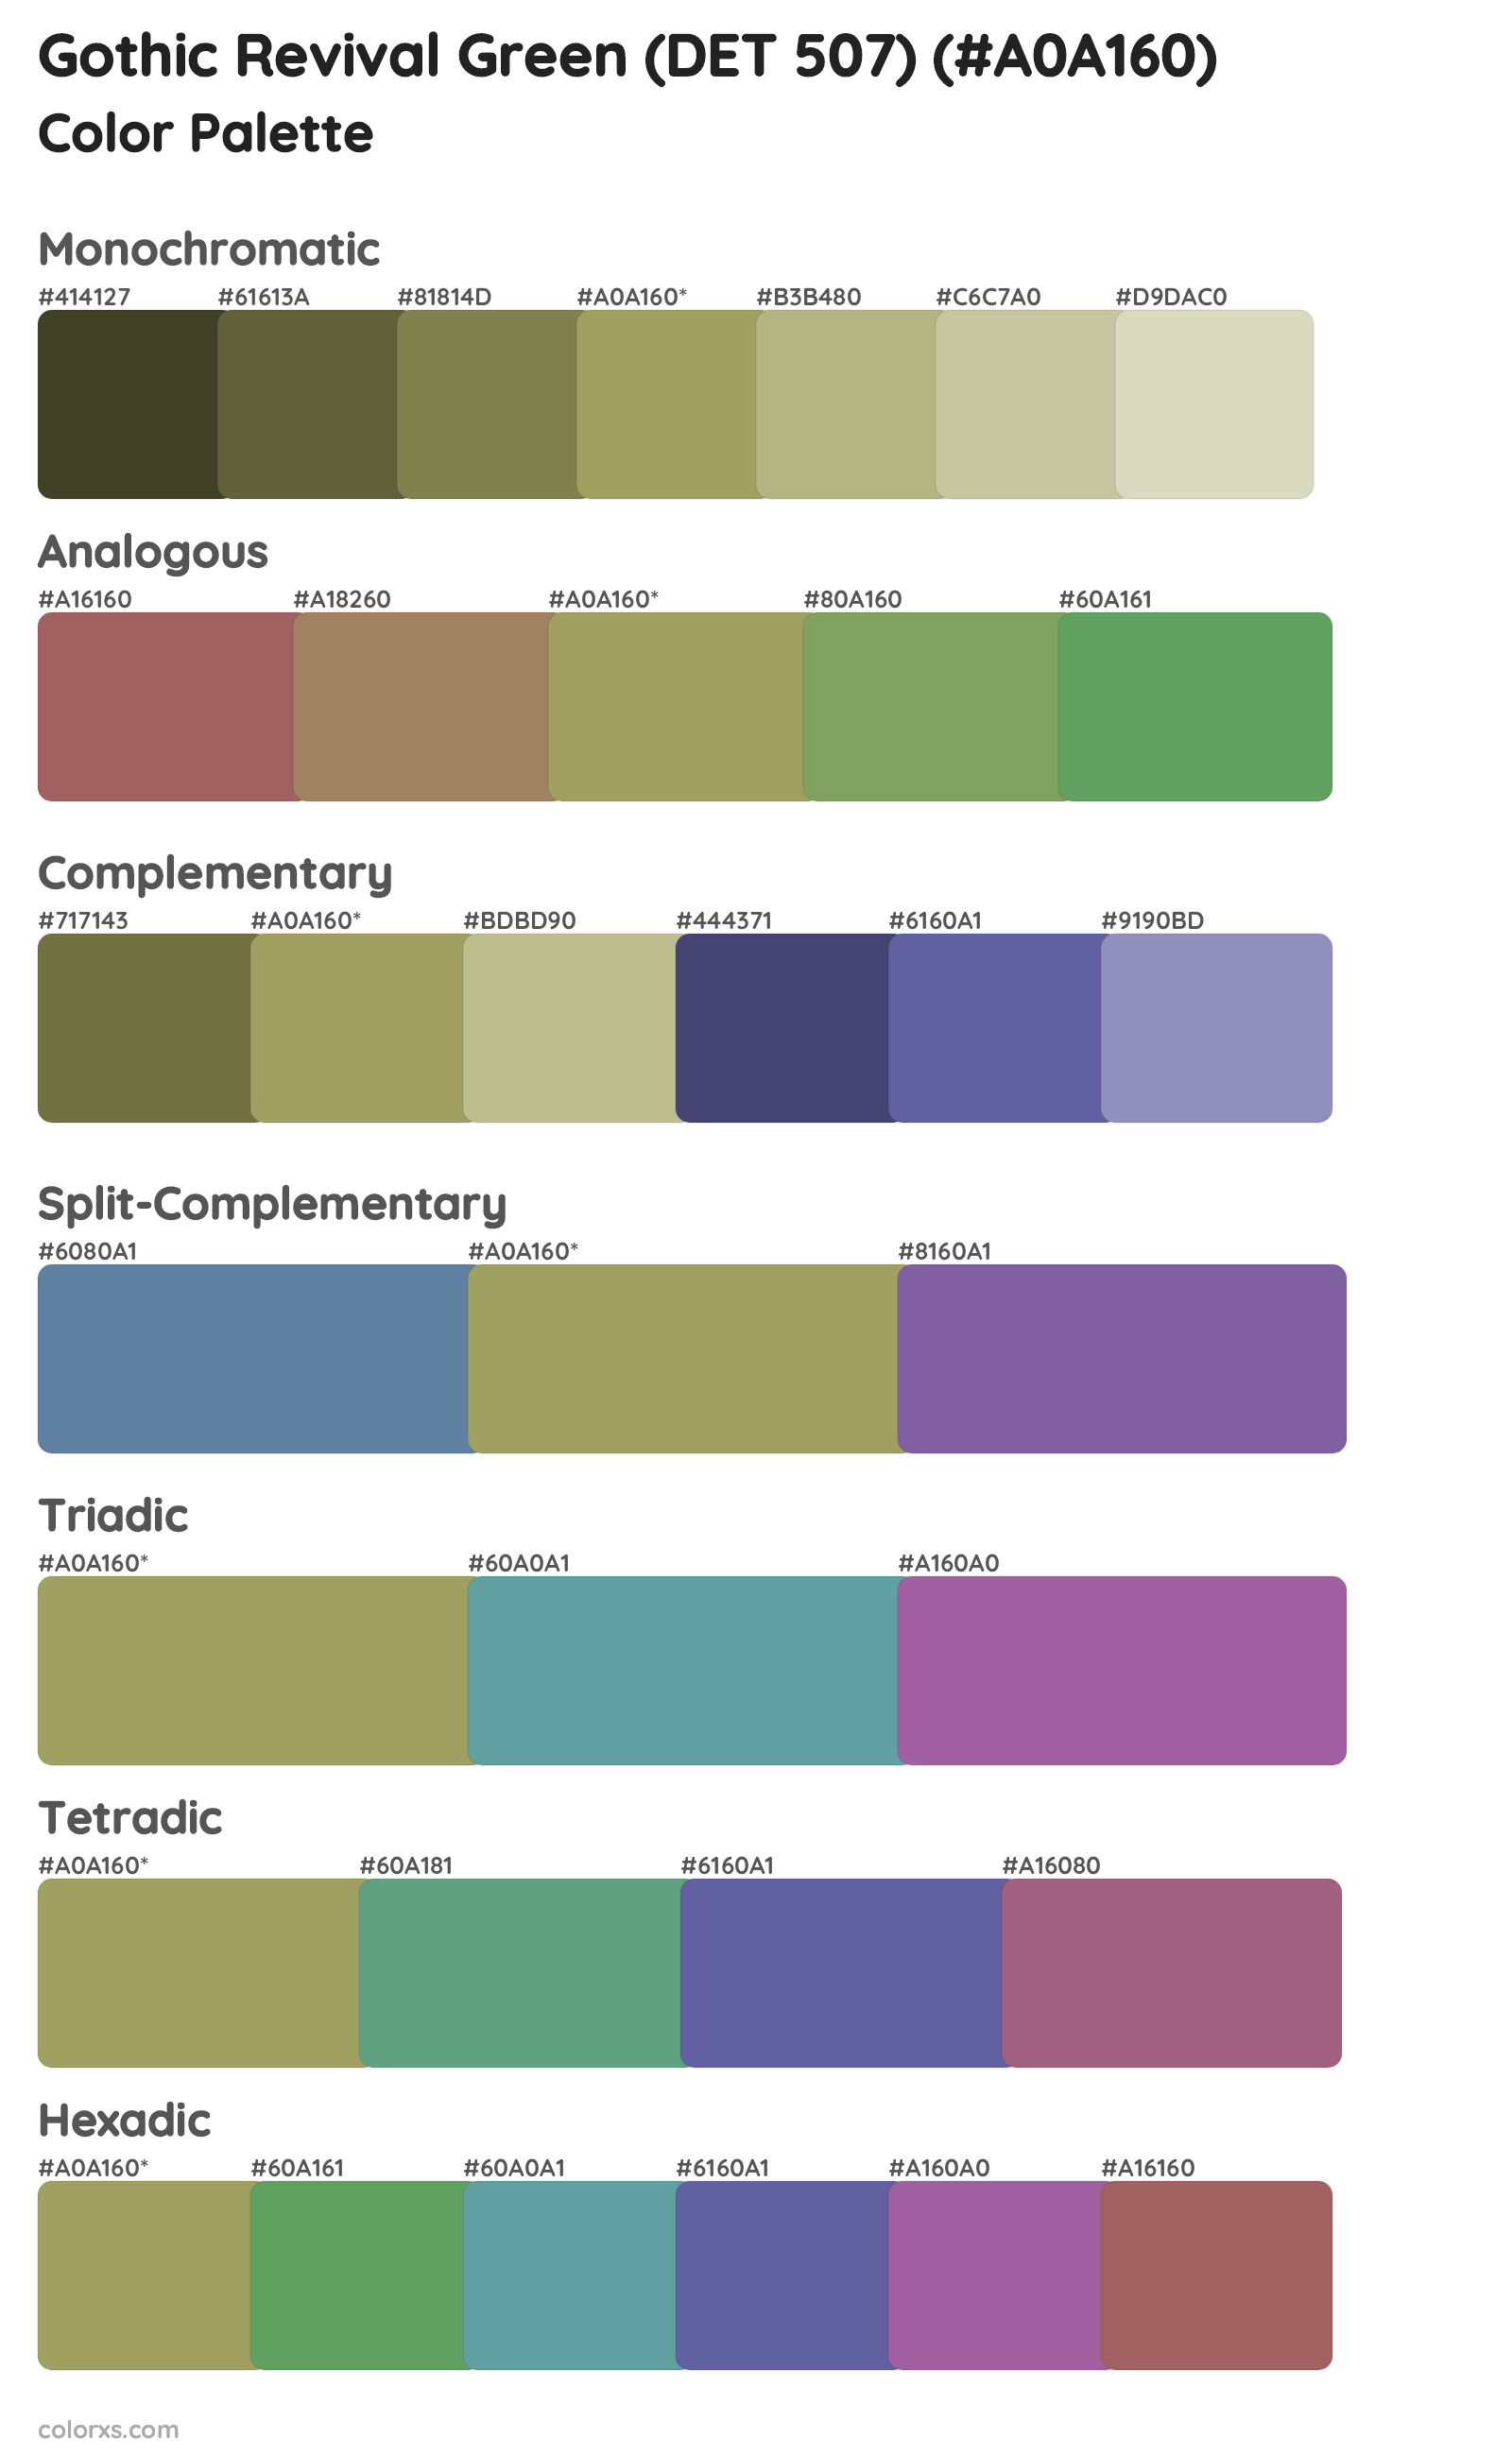 Gothic Revival Green (DET 507) Color Scheme Palettes